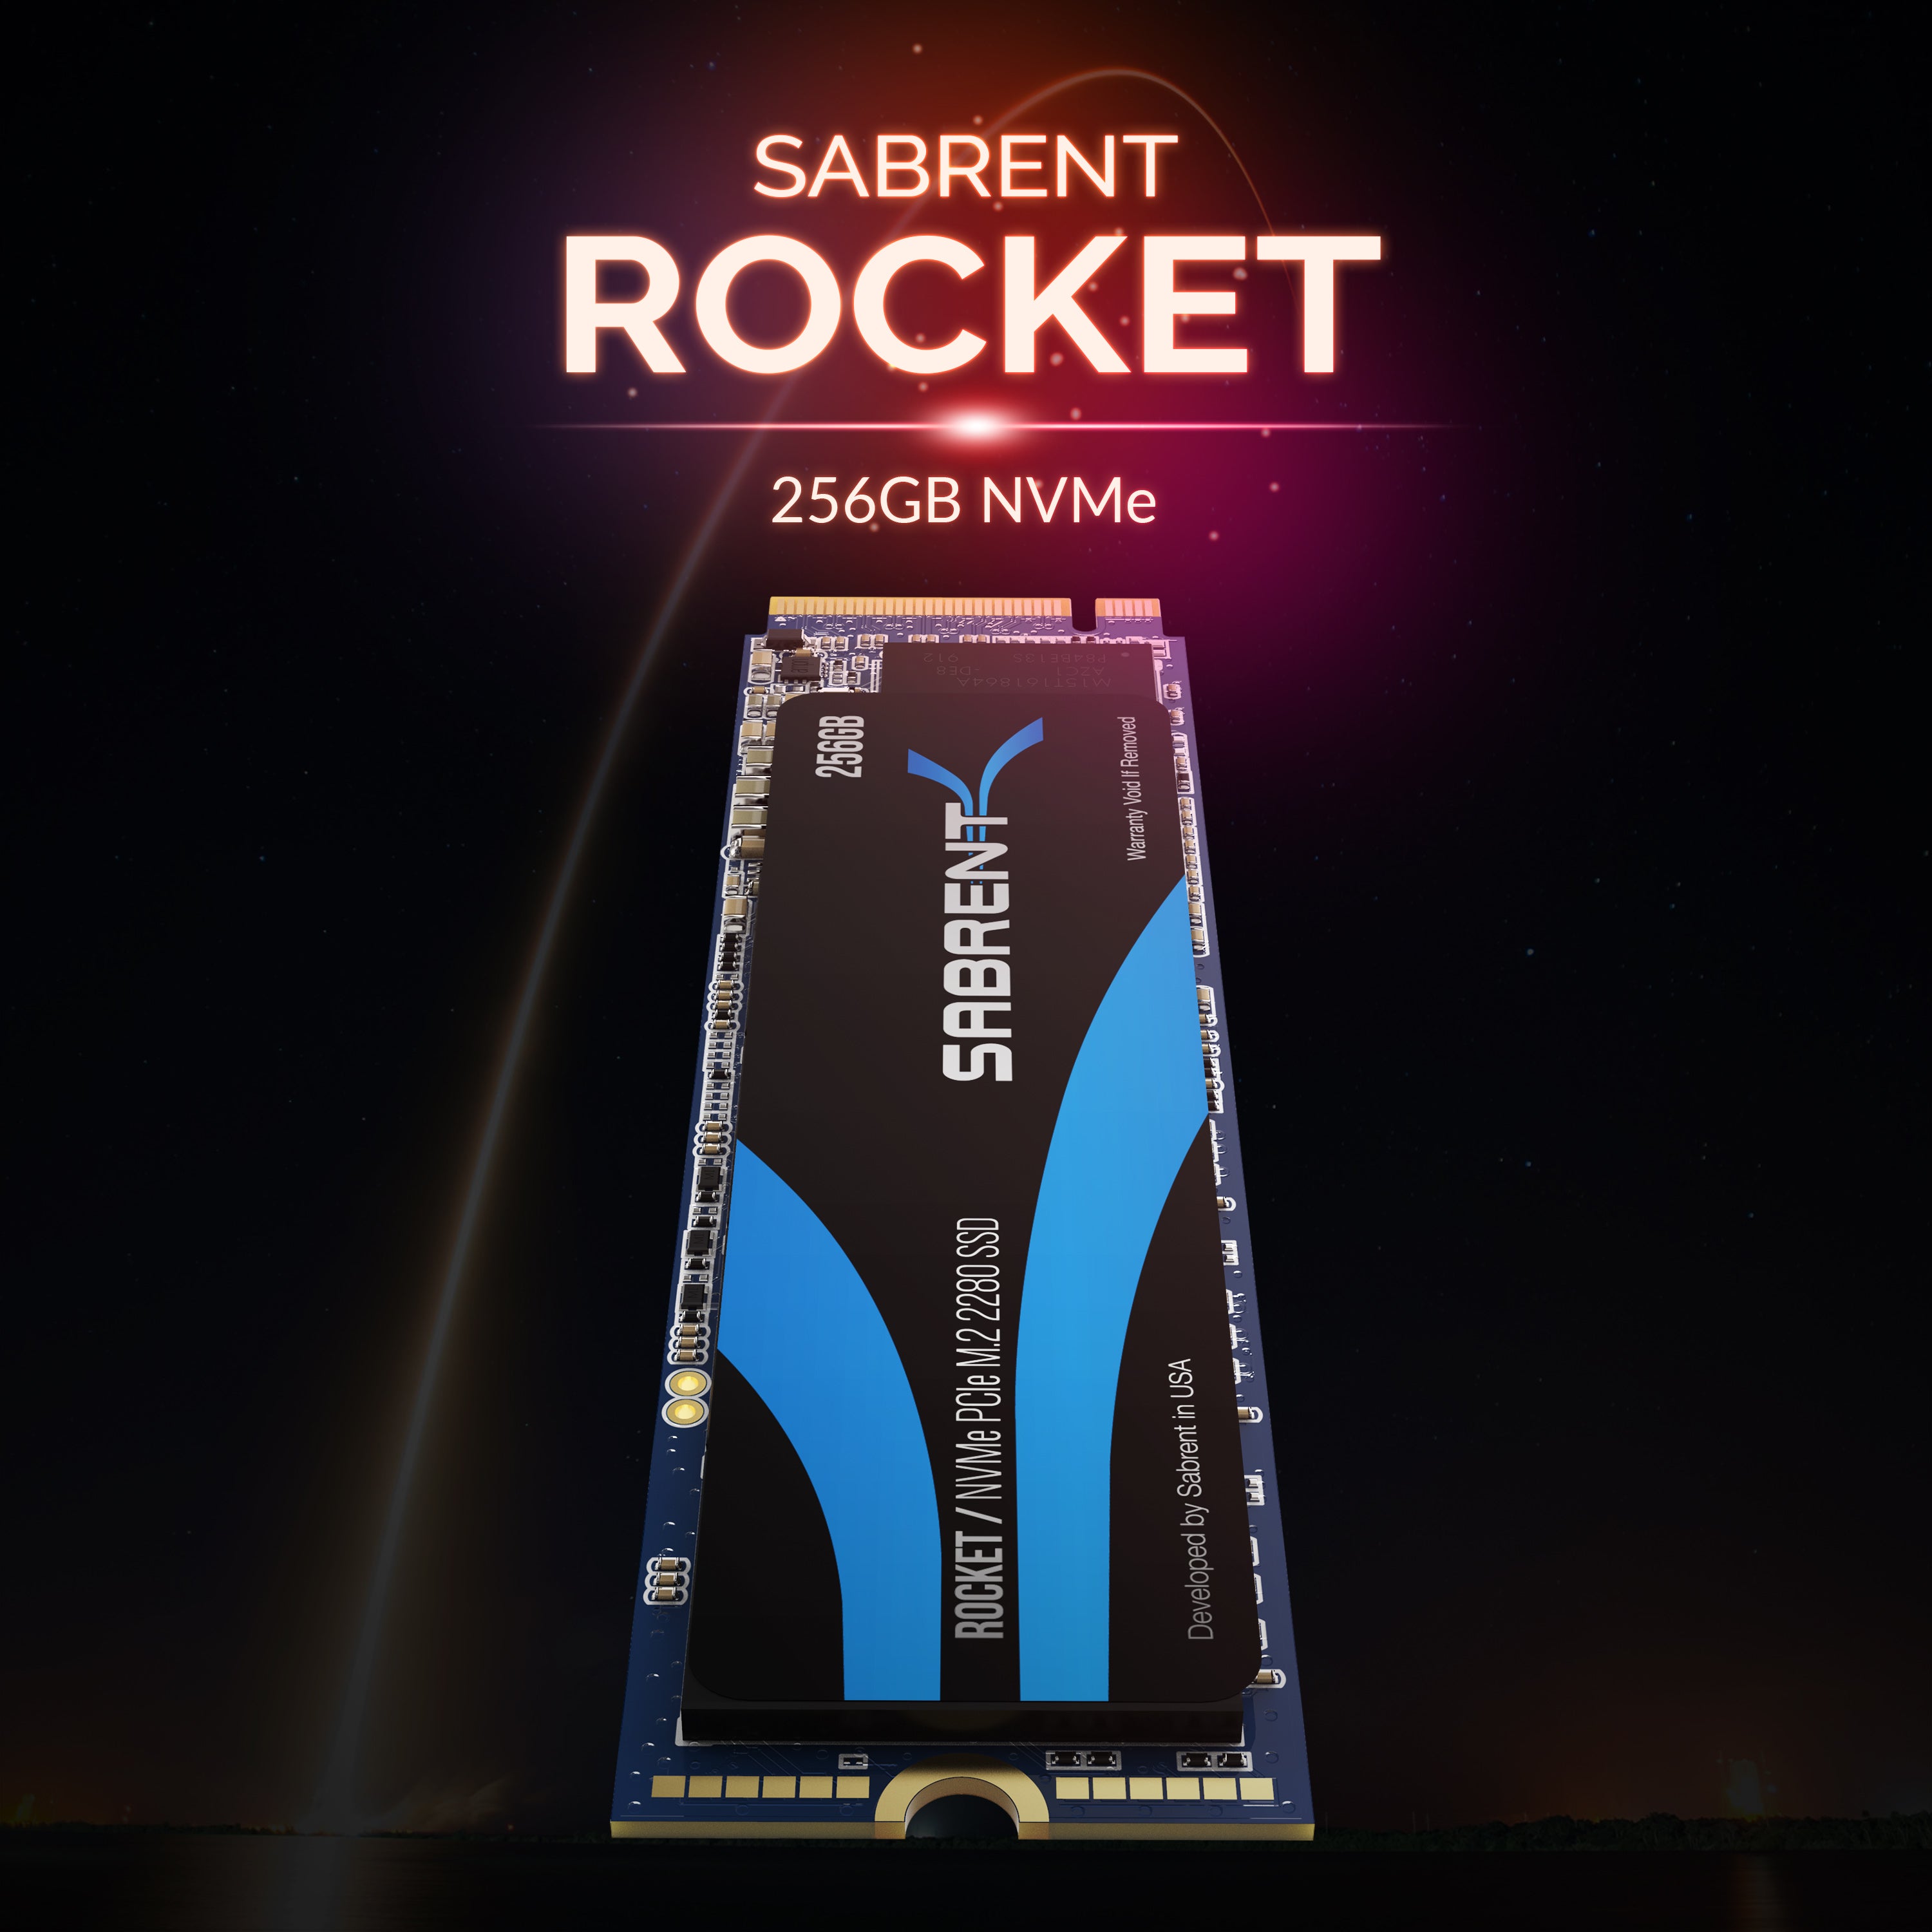 Rocket NVMe SSD - Sabrent